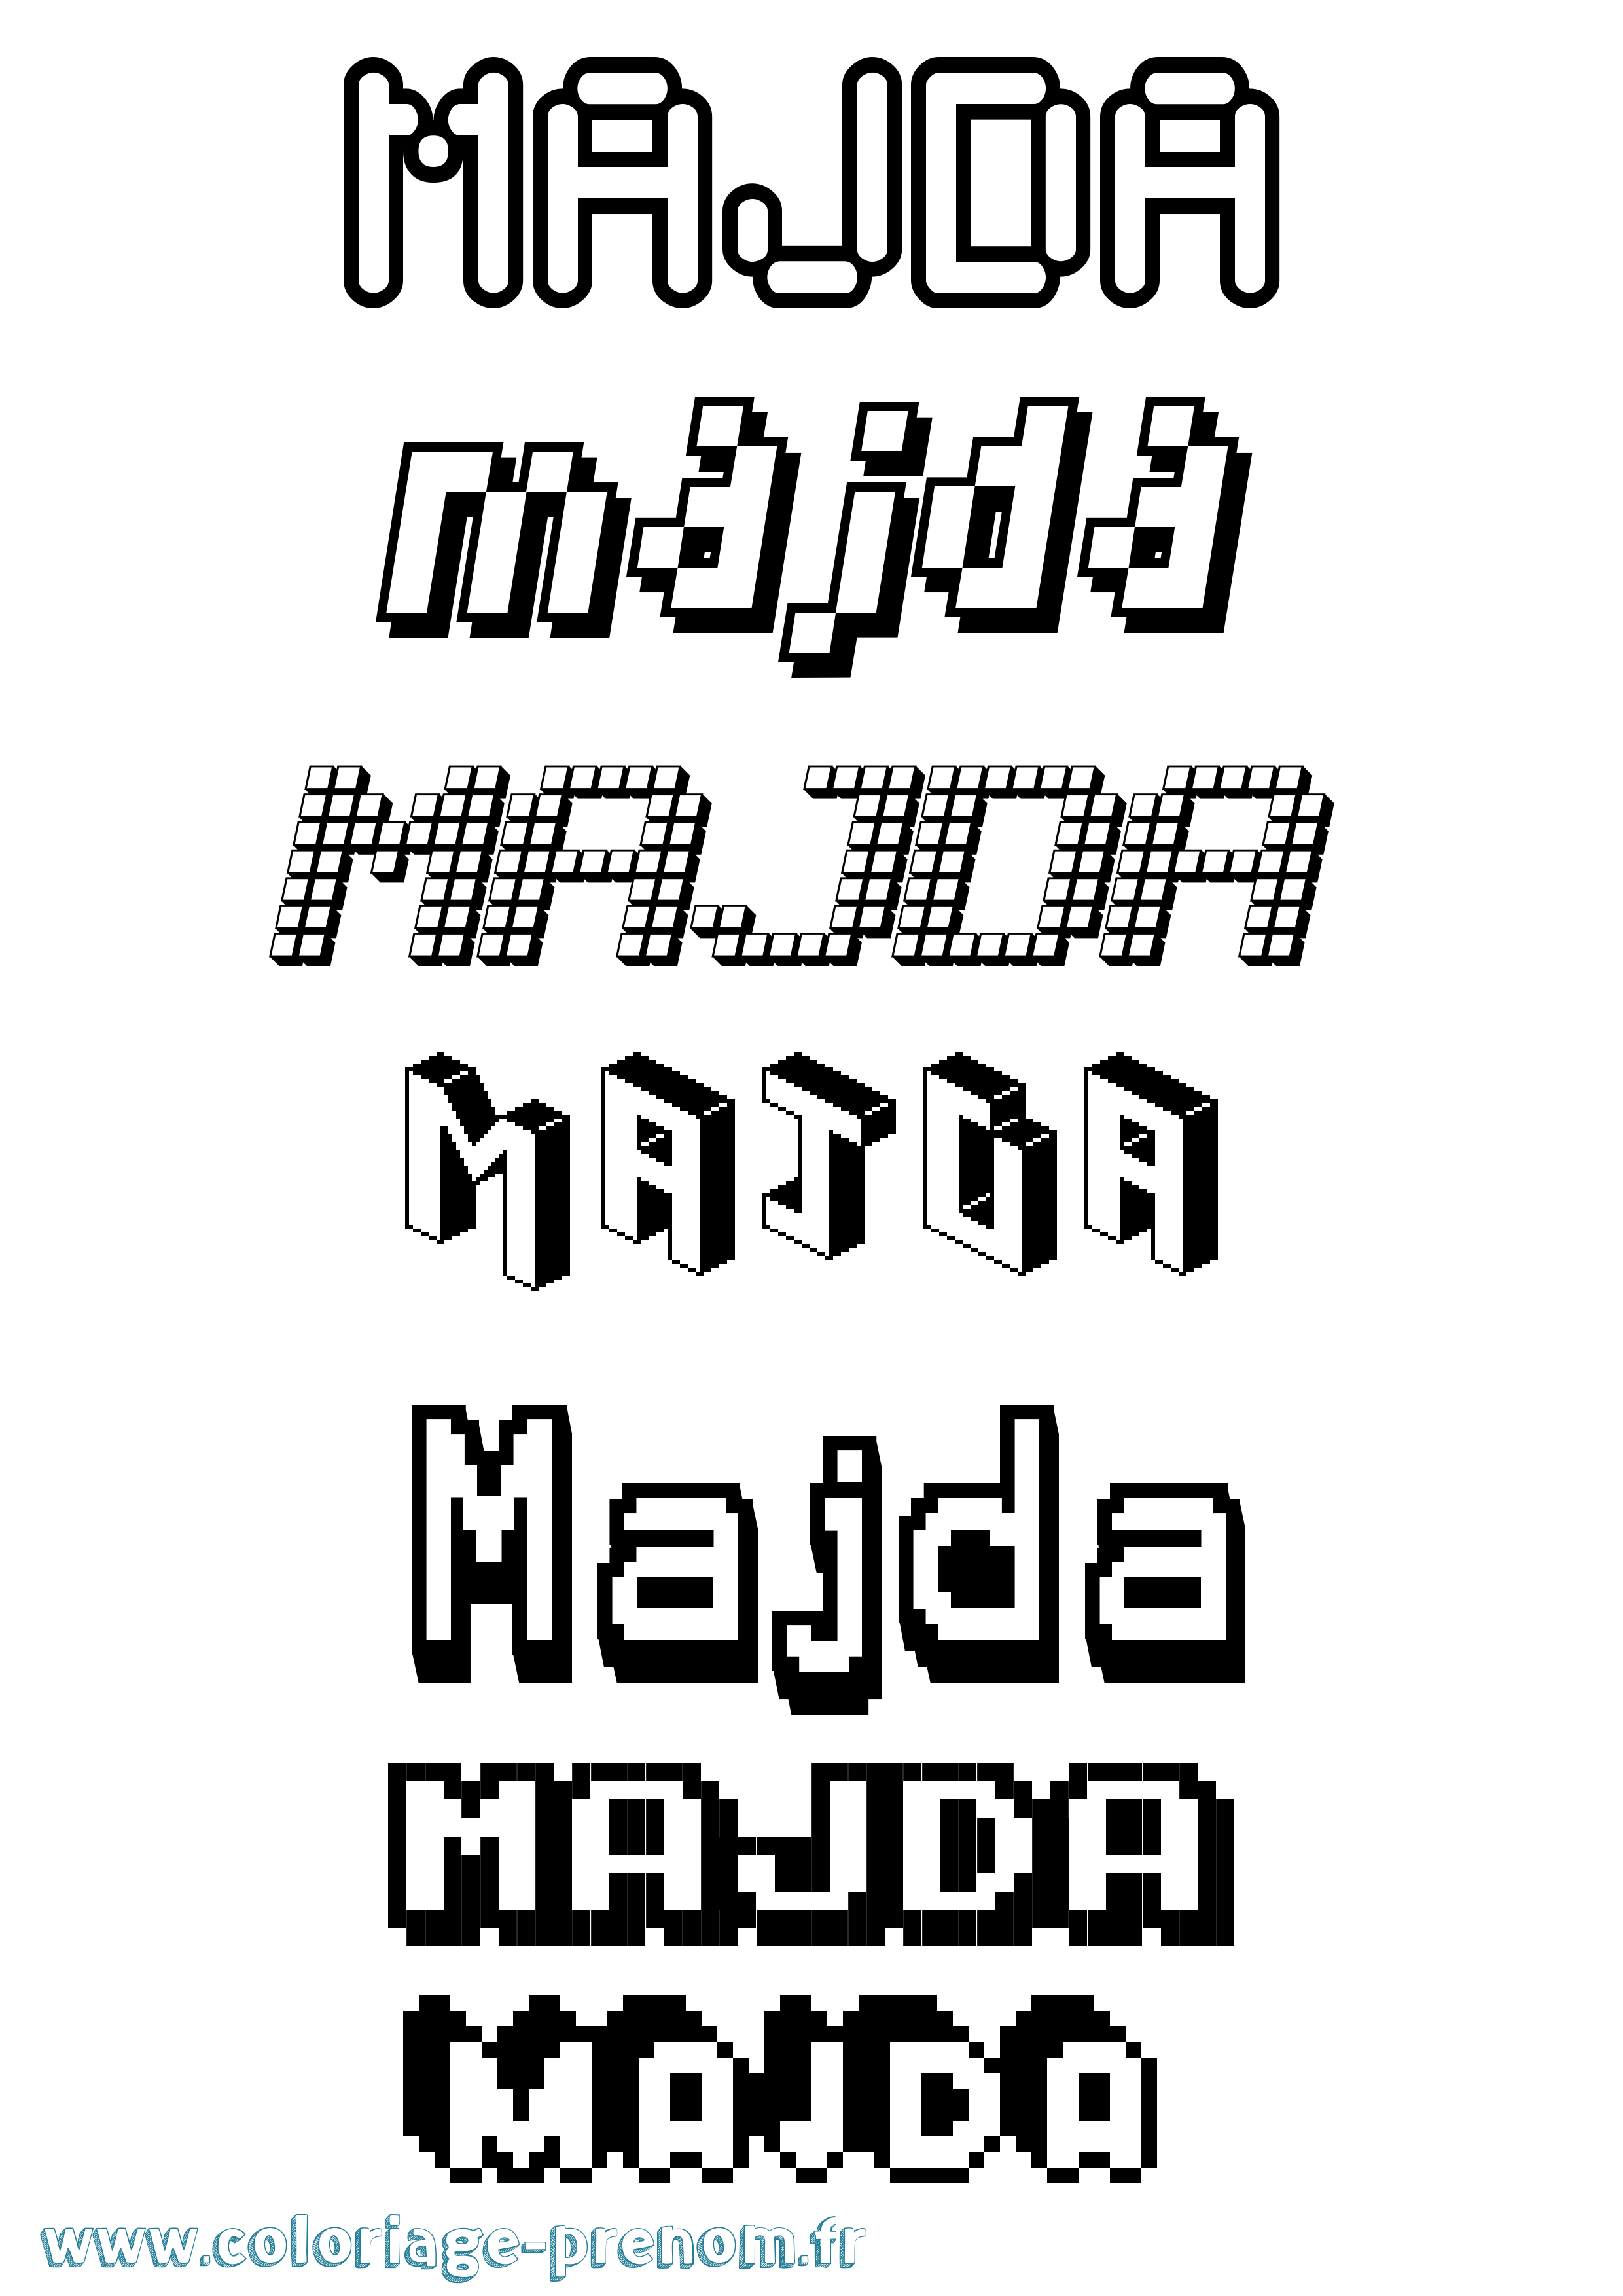 Coloriage prénom Majda Pixel